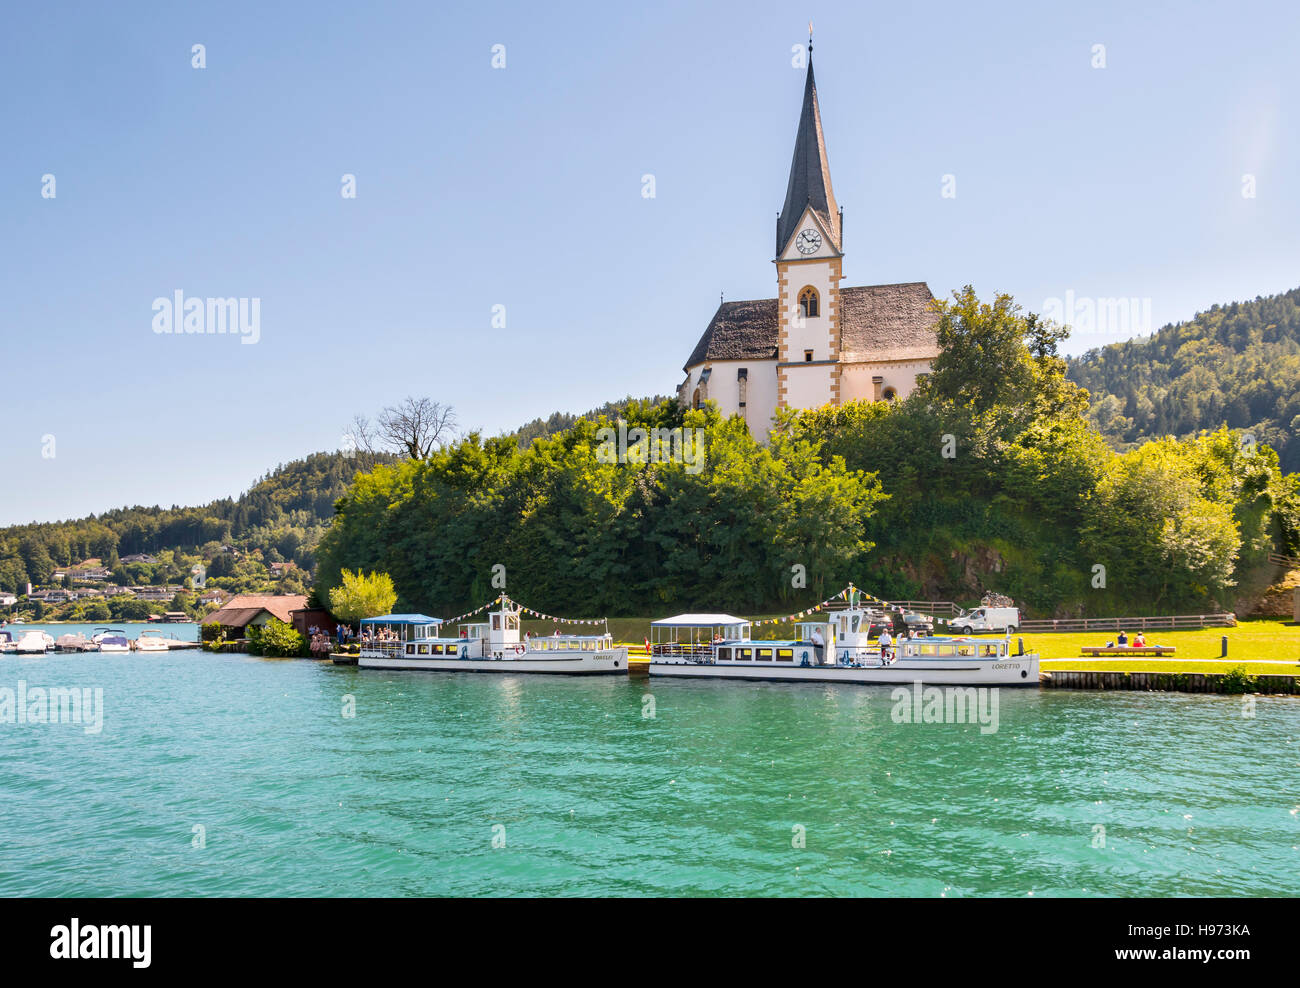 Maria Worth, Autriche - le 14 août 2016 : Vintage bateaux touristiques à l'église de Maria Worth attendent des passagers. Primus et Felician Saints dans l'Église Banque D'Images